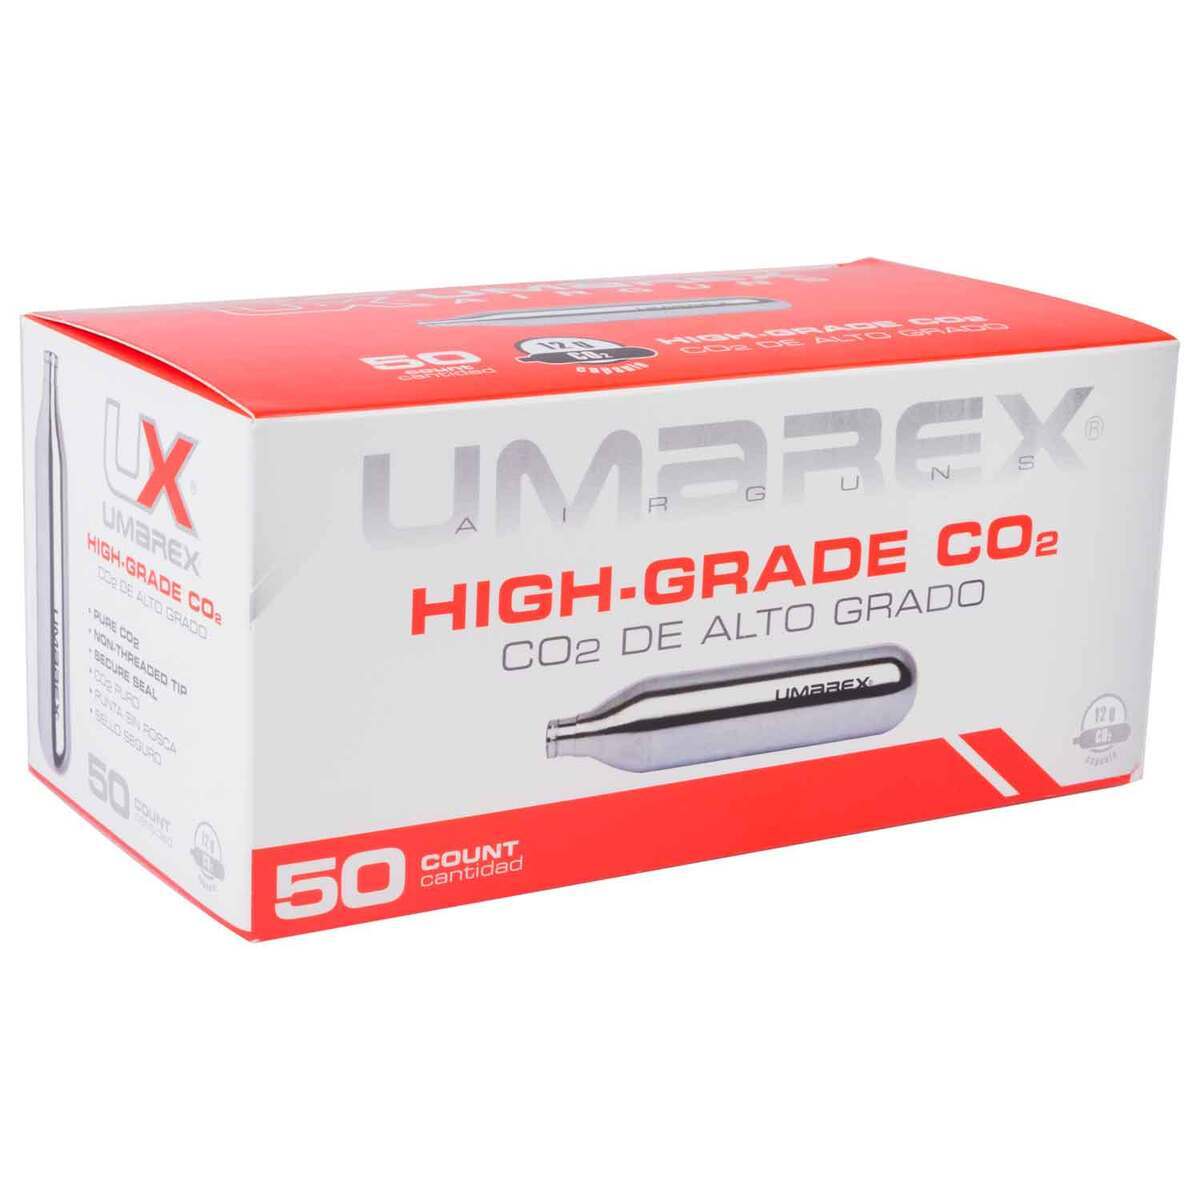 UMAREX 12g CO2 12 pack